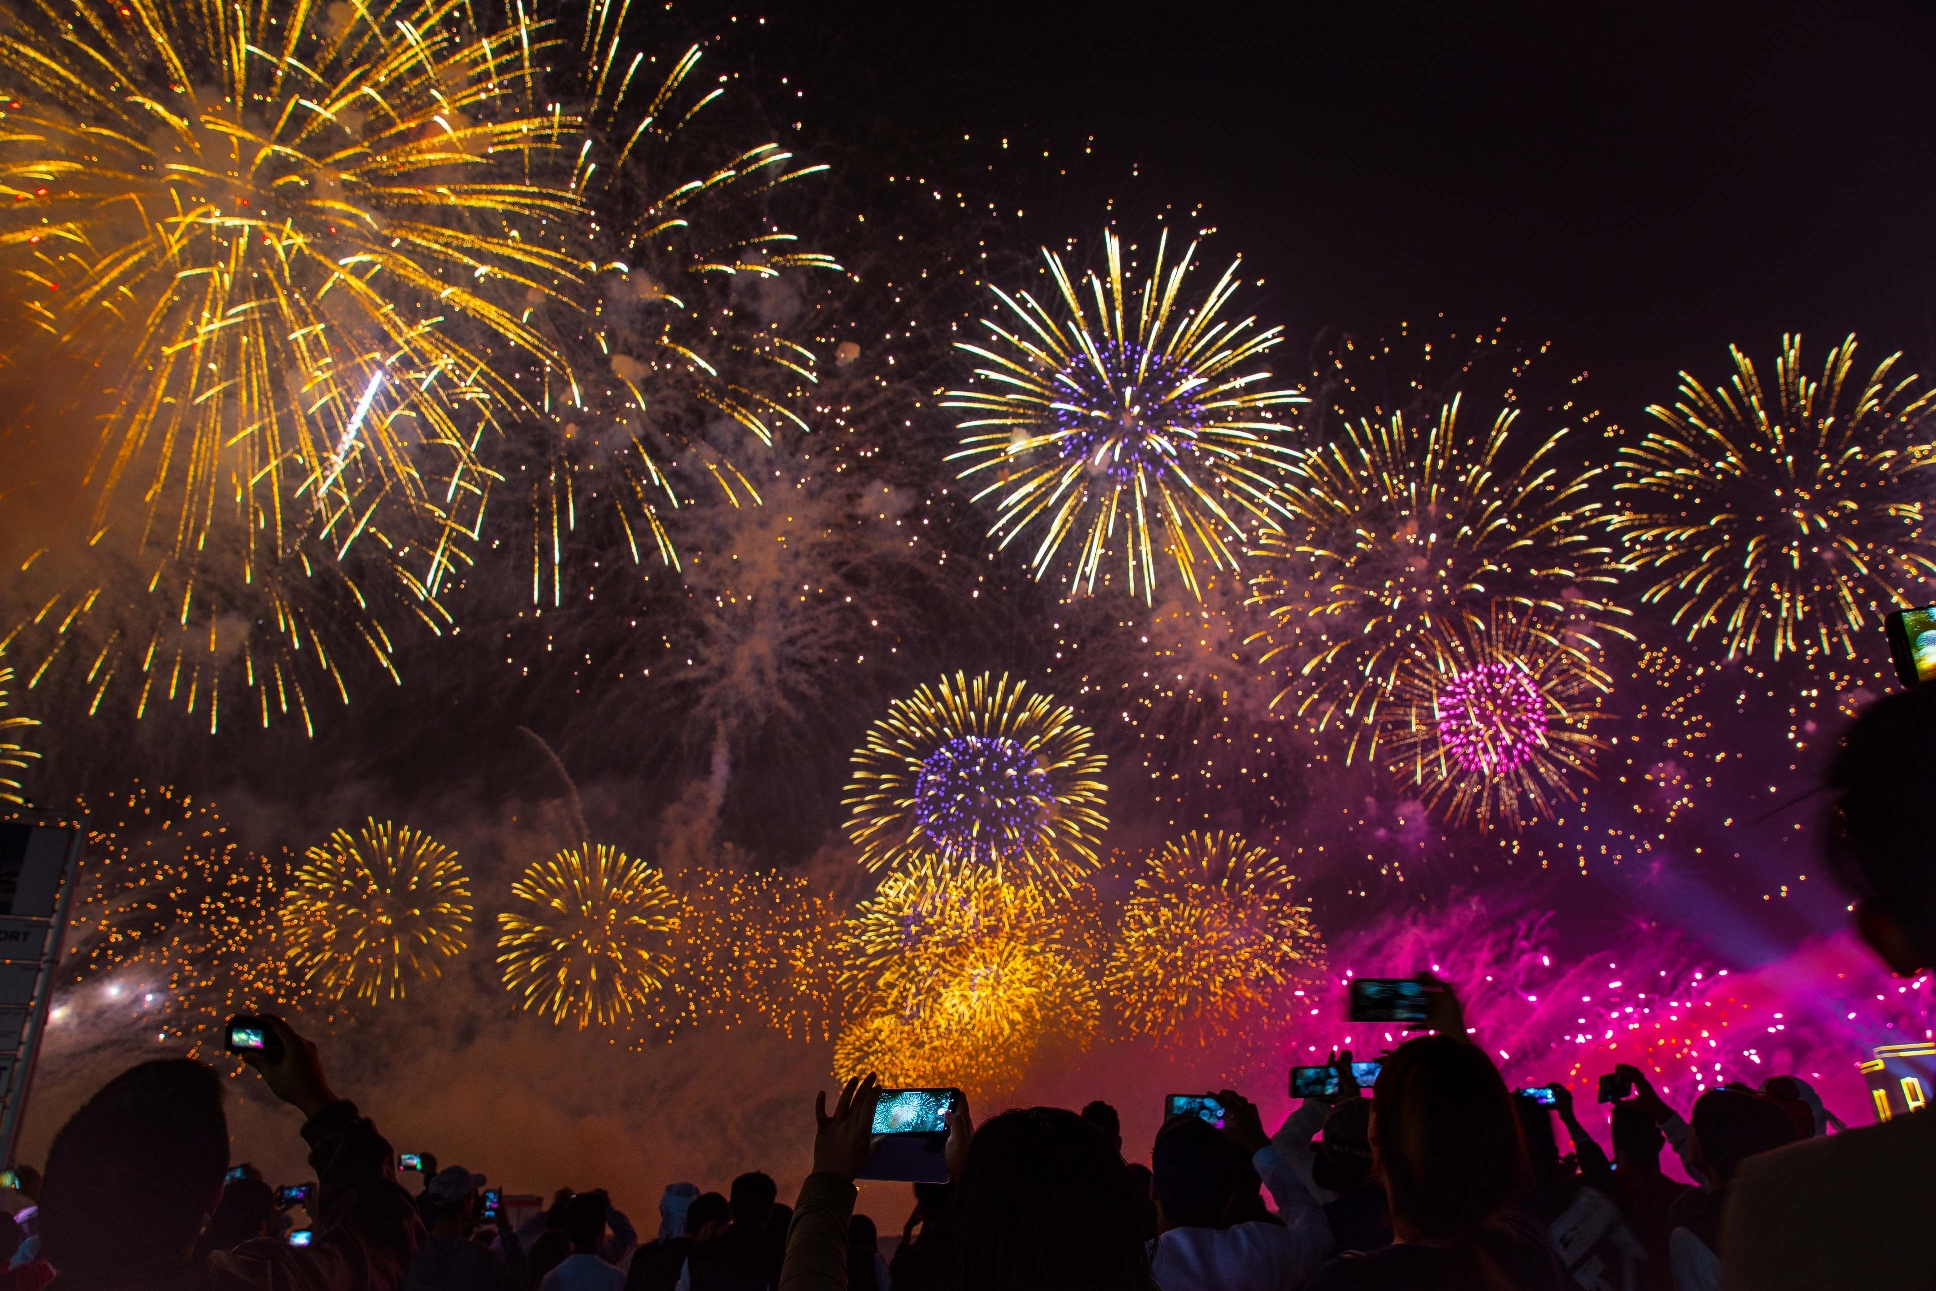 إحتفالات ضخمة بليلة رأس السنة 2020 في هيلتون جزيرة المرجان